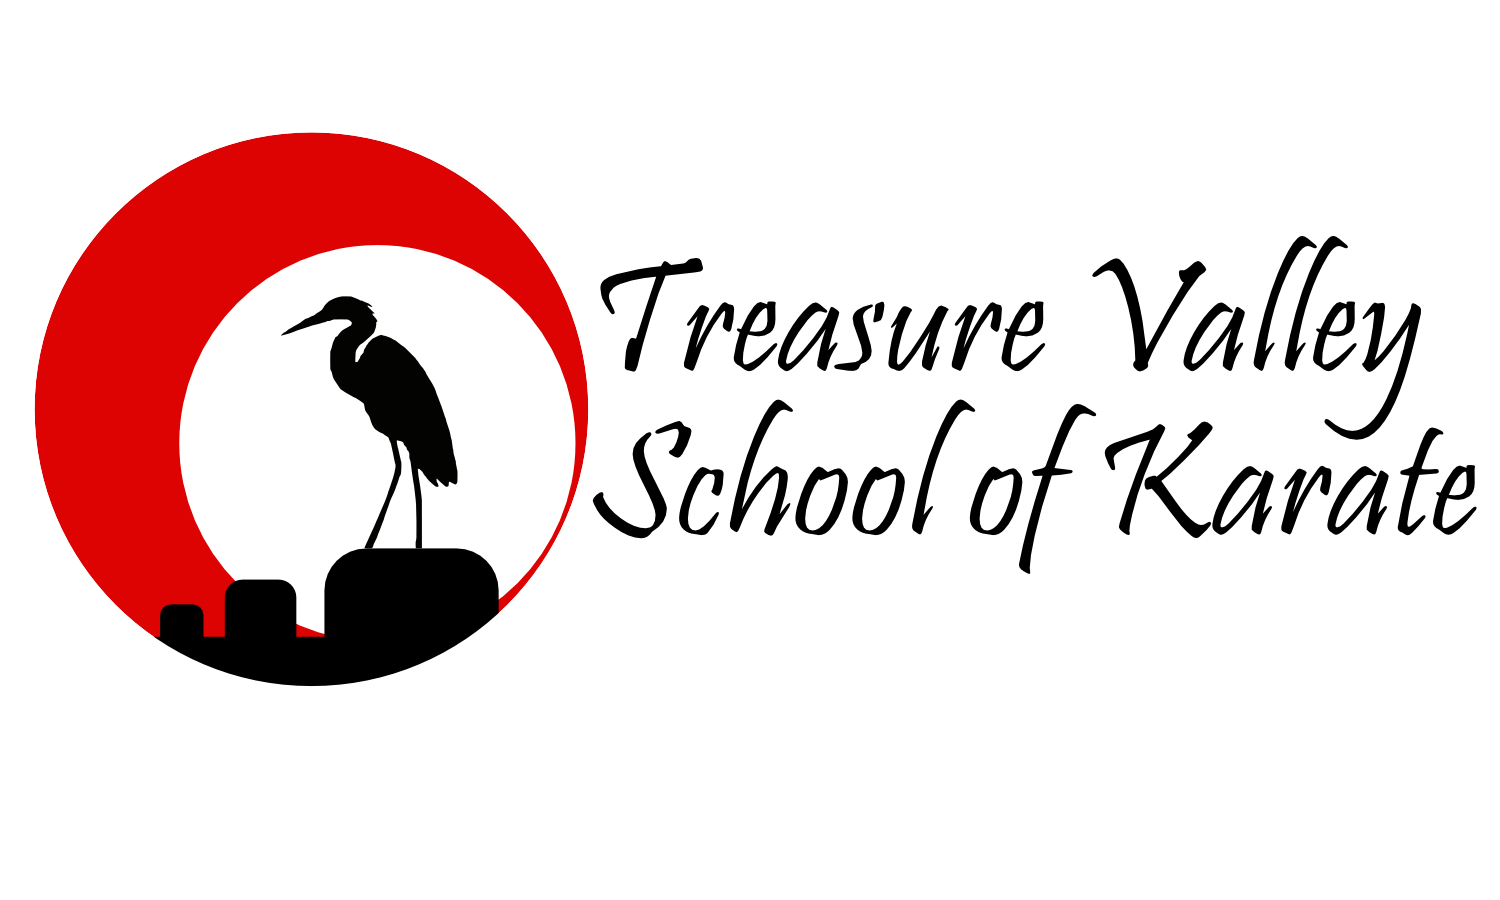 Meridian Idaho, Treasure Valley School of Karate